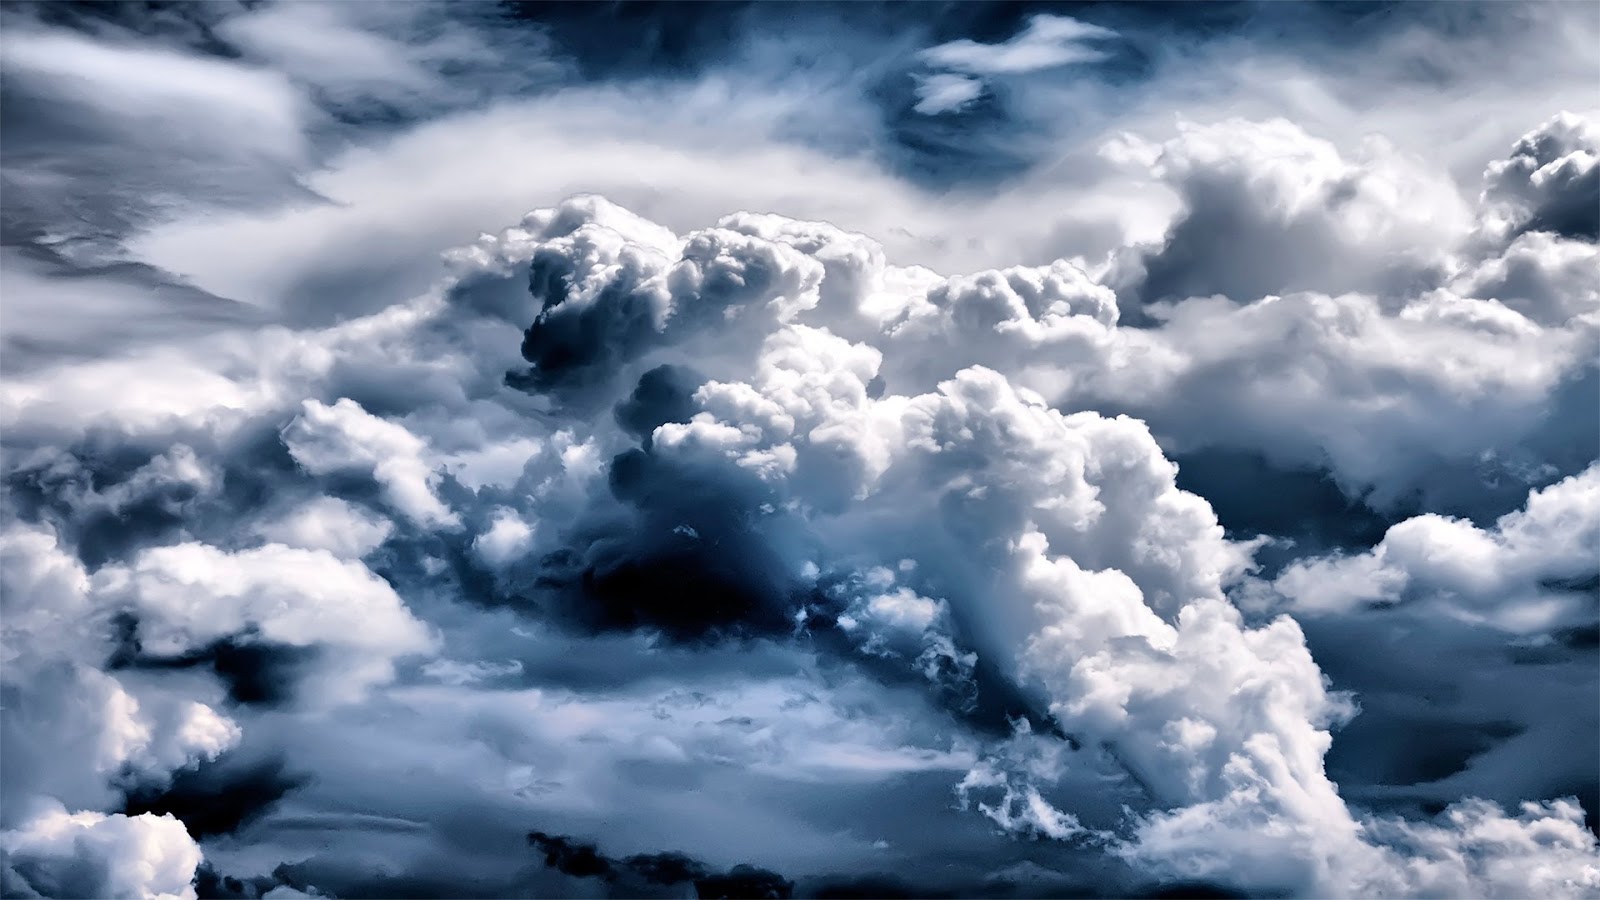 ウルトラhd壁紙1080p,空,雲,昼間,積雲,雰囲気